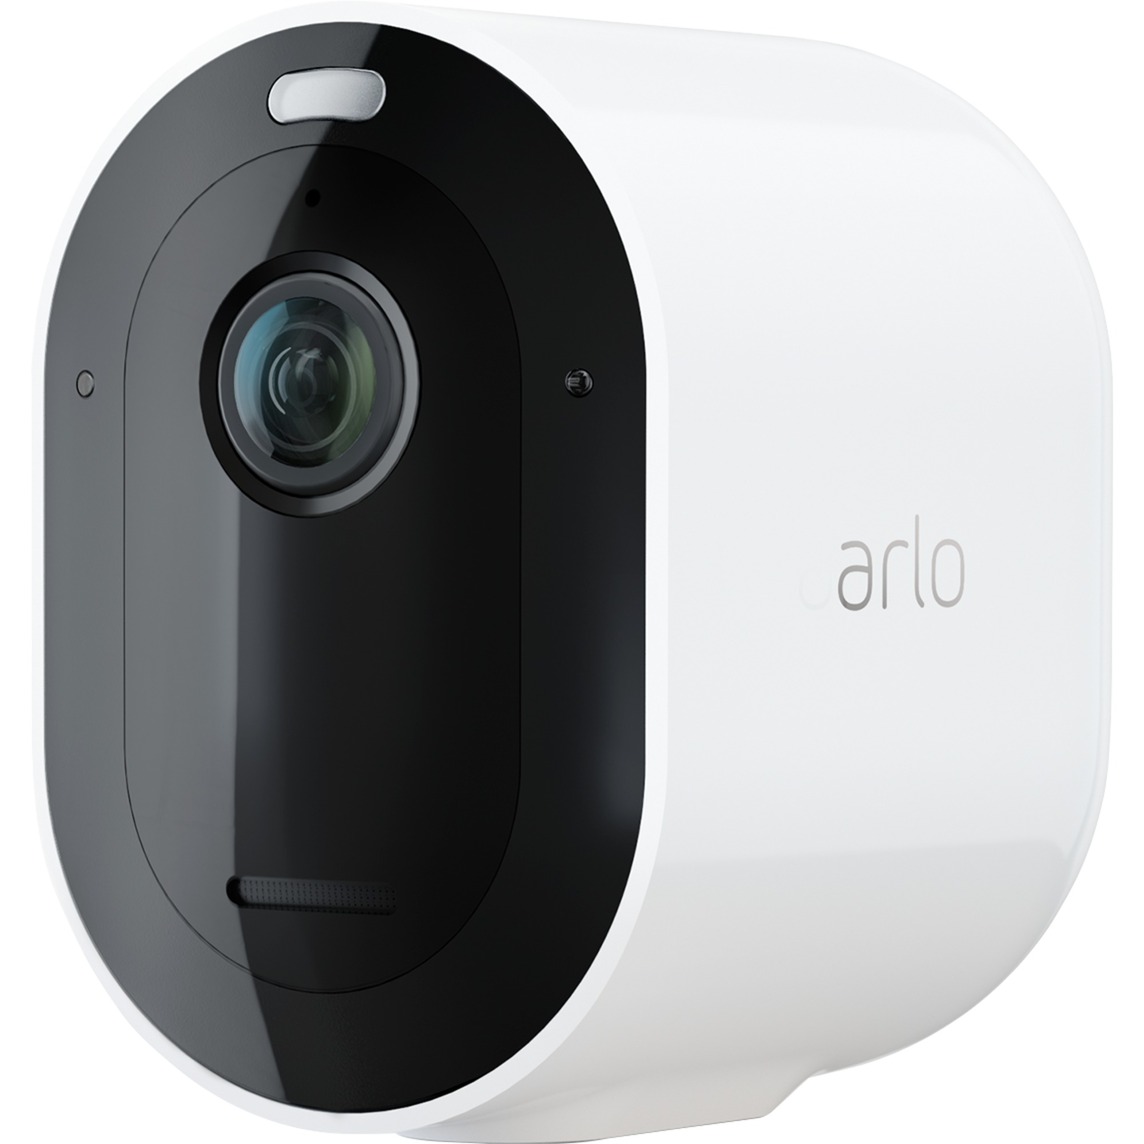 Image of Alternate - Pro 3 2K QHD Add-On-Kamera, Überwachungskamera online einkaufen bei Alternate